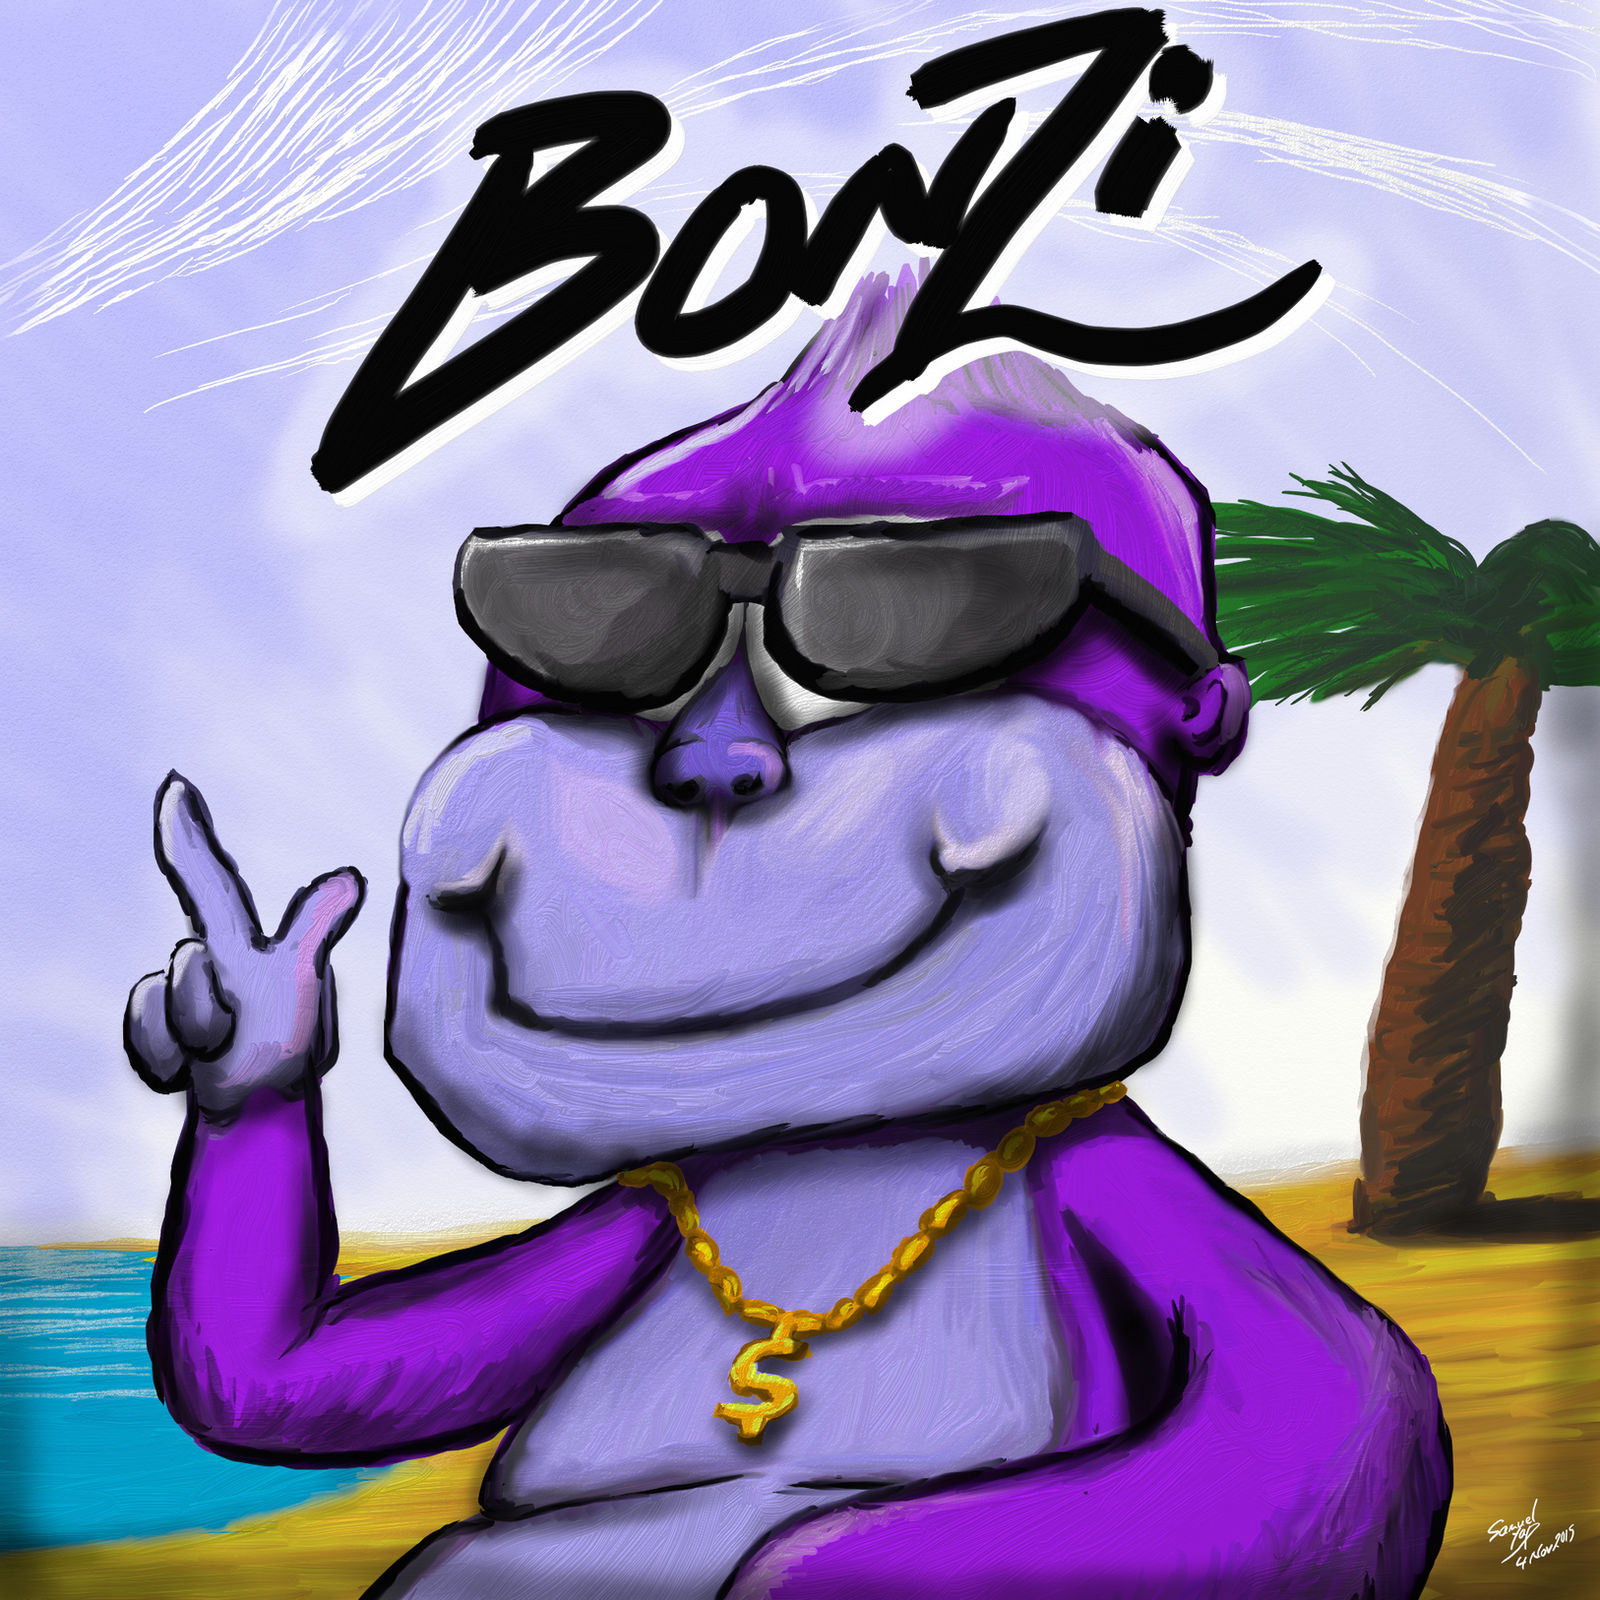 Bonzi Buddy full Body Not Subsurf yet by BonziBuddyAgents on DeviantArt